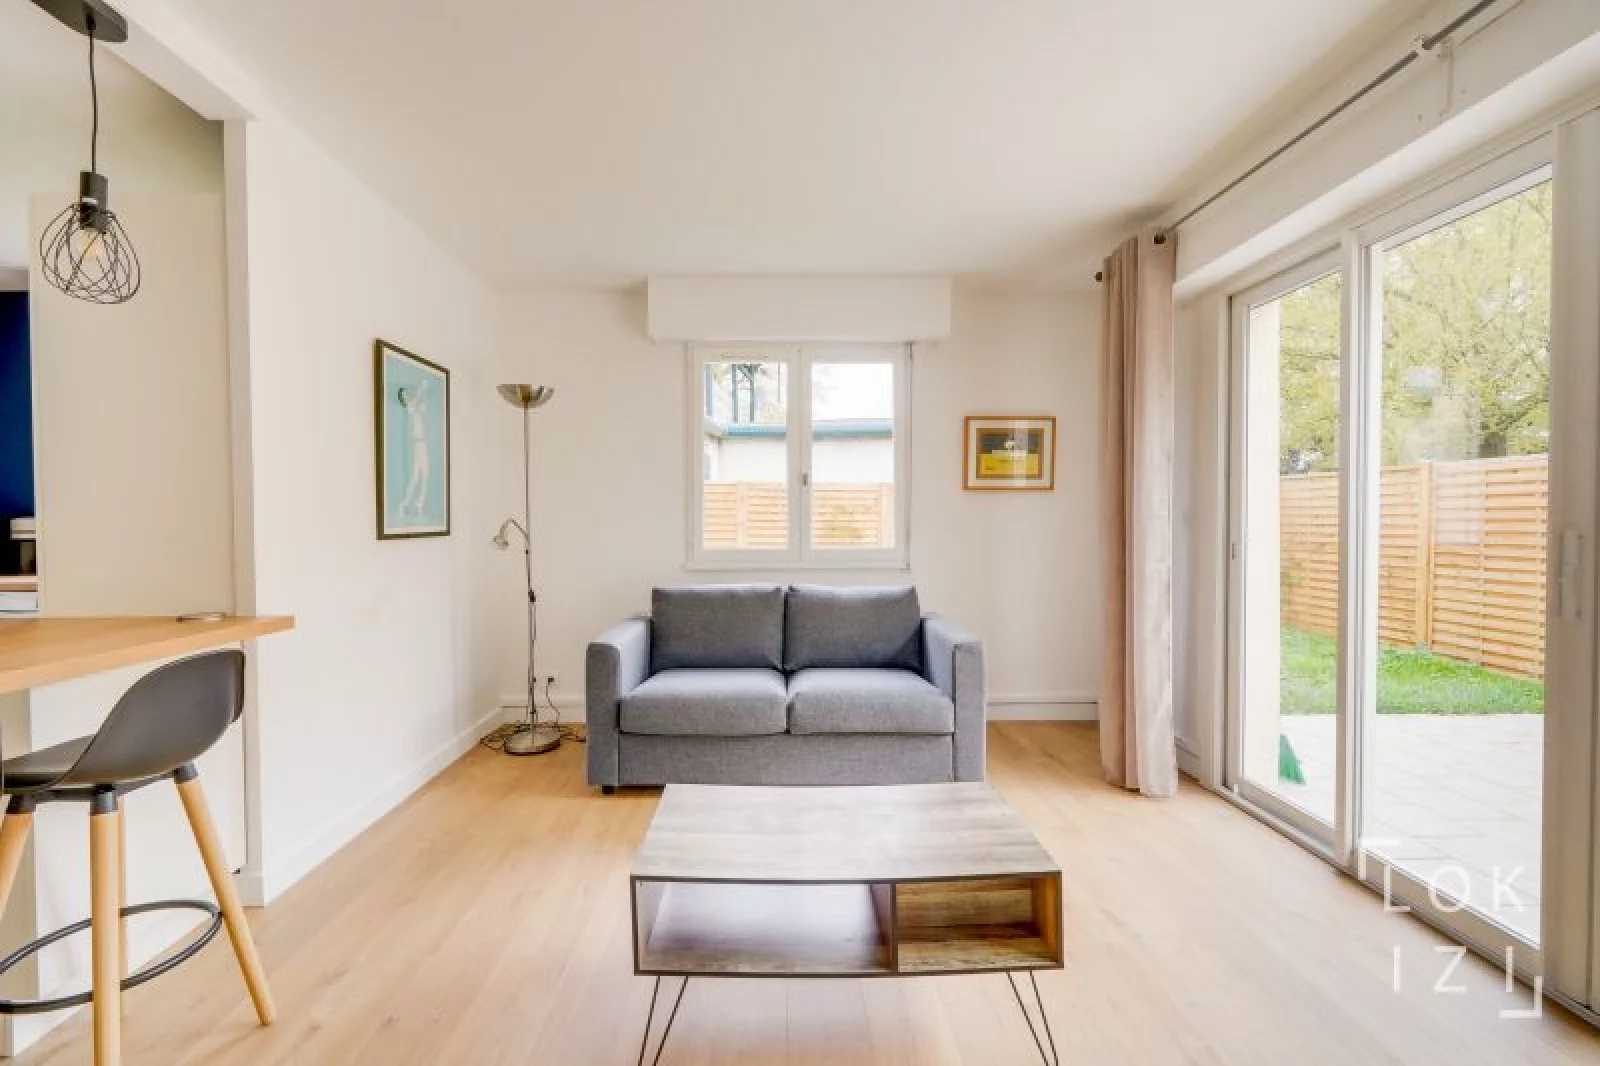 Location appartement meublé T2 de 49m² avec jardin (Bordeaux - Caudéran)